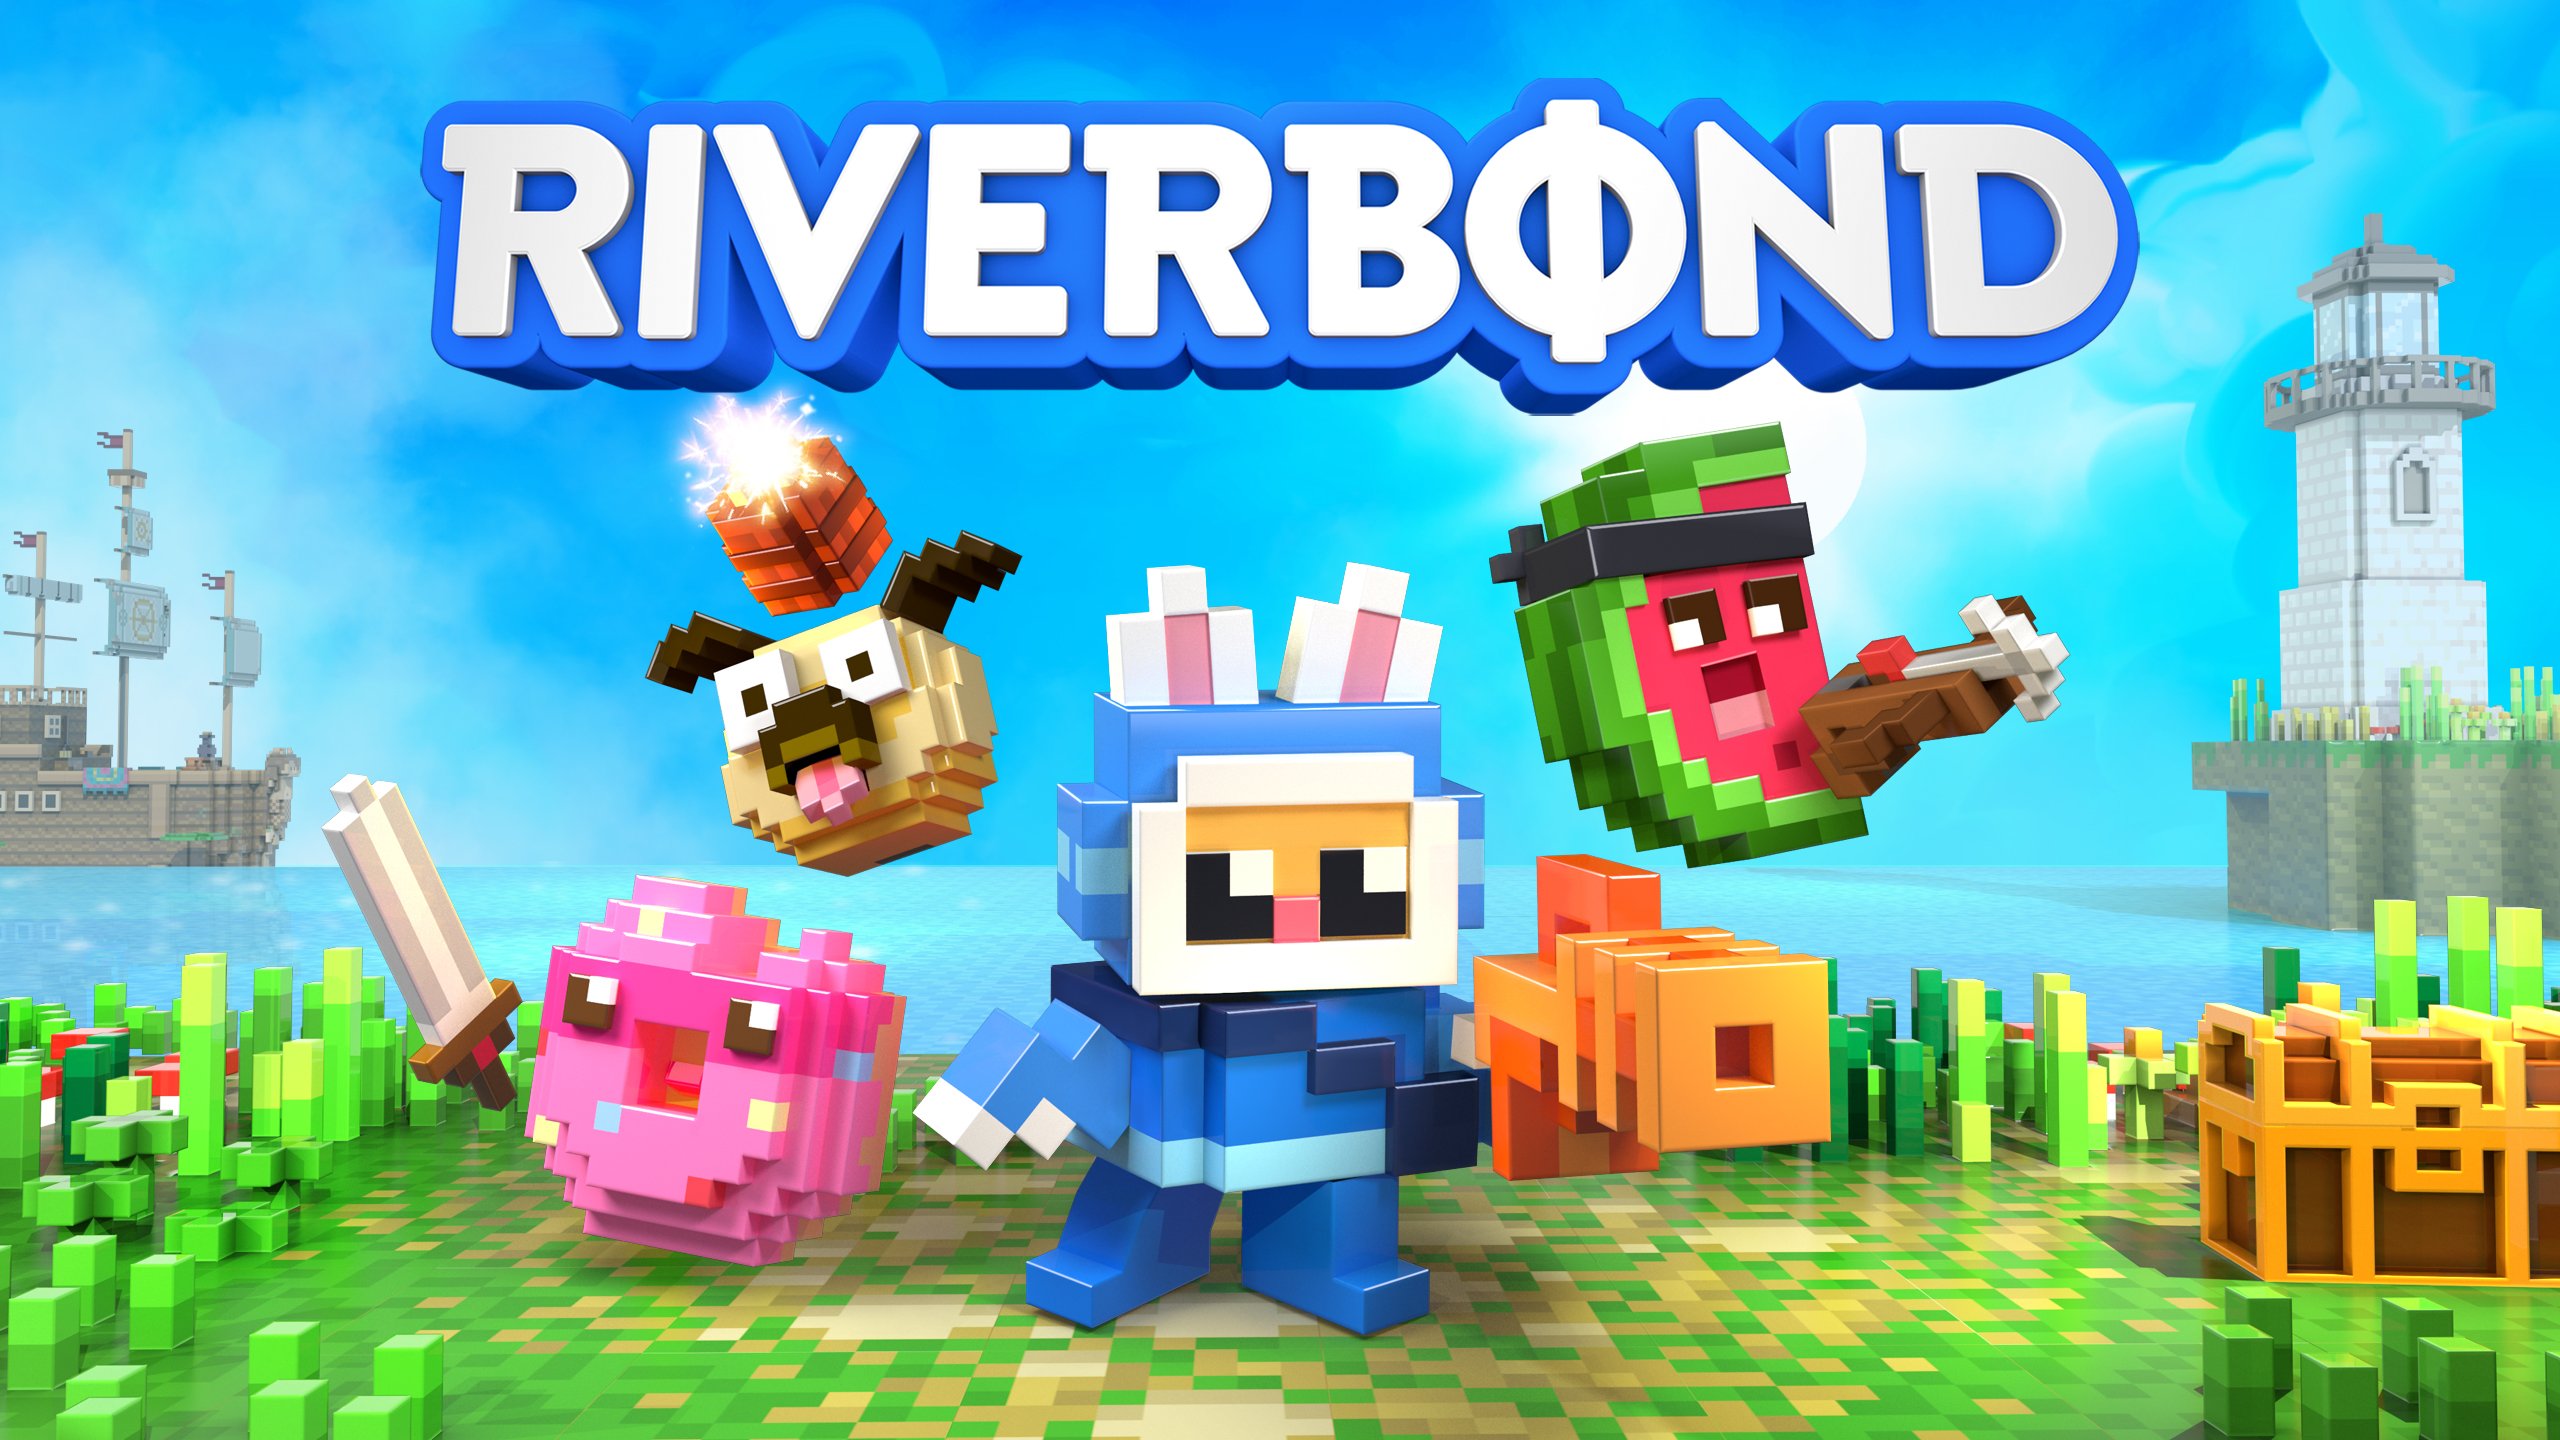 Riverbond - jedna z darmowych gier w Epic Games Store